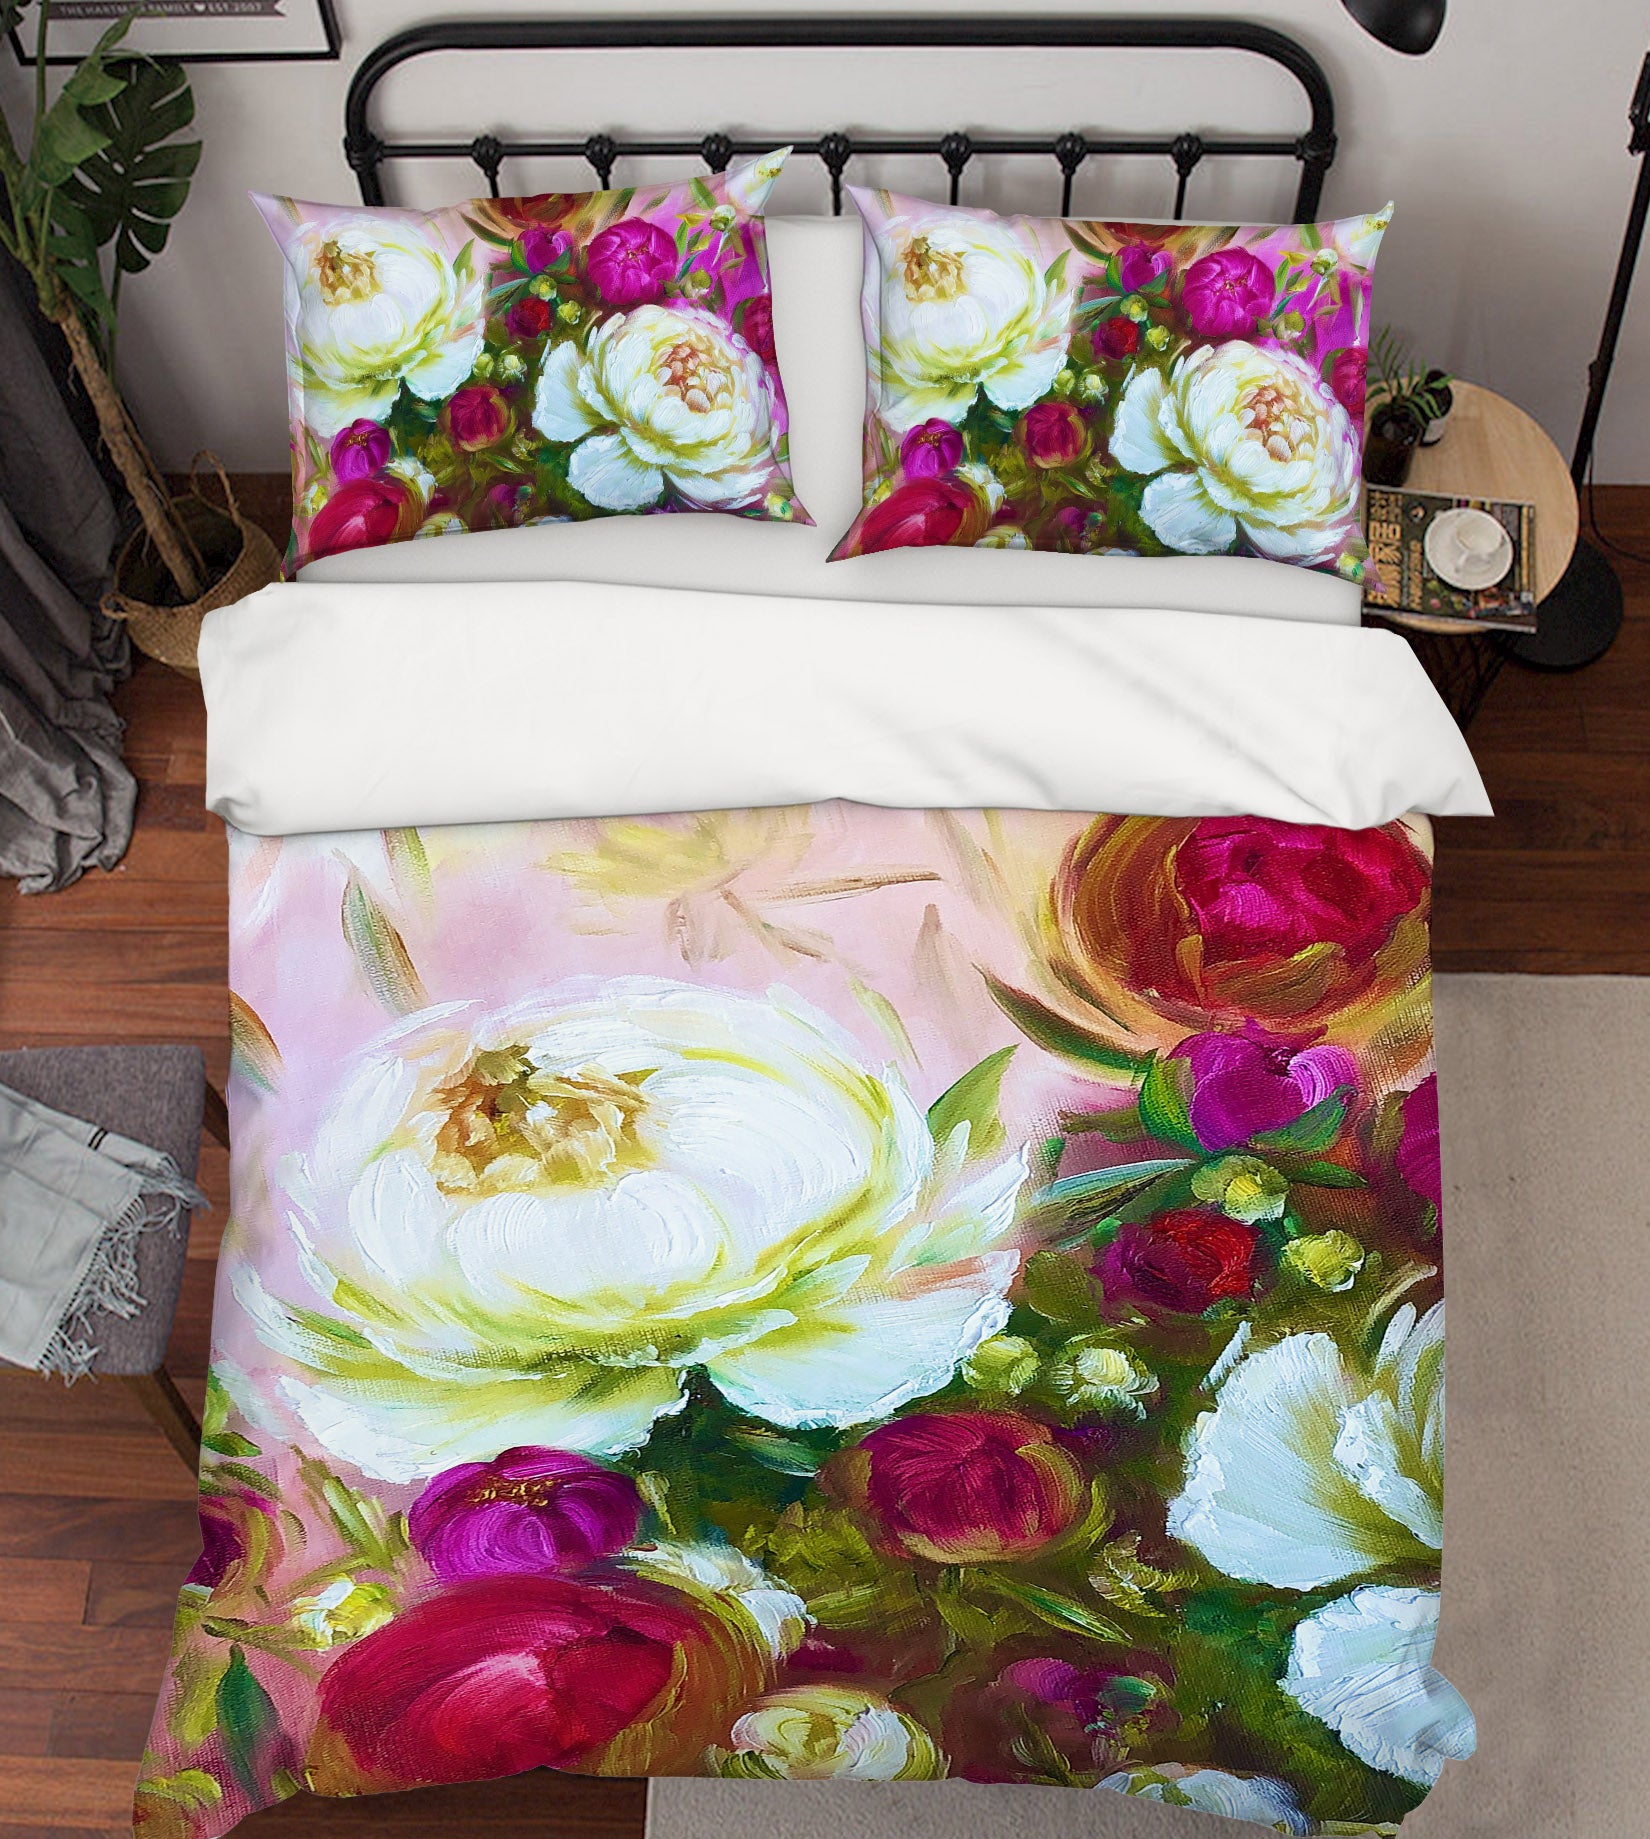 3D Rose Red Flower 625 Skromova Marina Bedding Bed Pillowcases Quilt